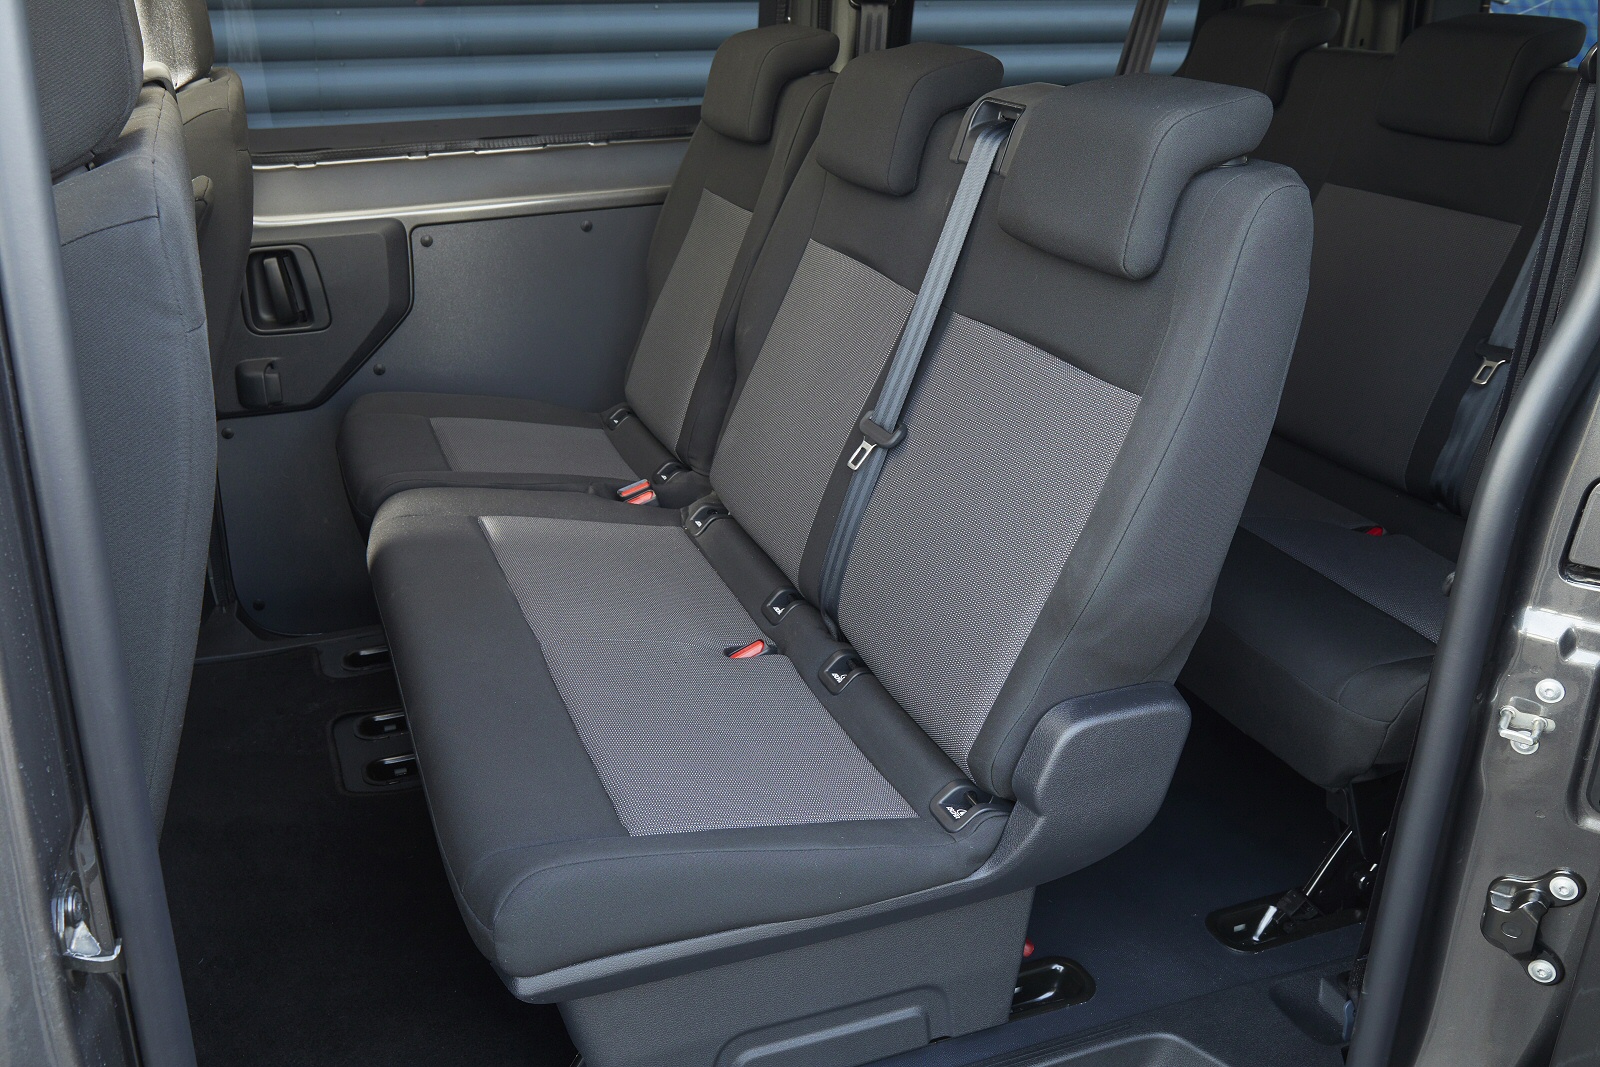 CITROEN E-SPACE TOURER ELECTRIC ESTATE 100kW Business Edition XL [9 Seat] 50kWh 5dr Auto